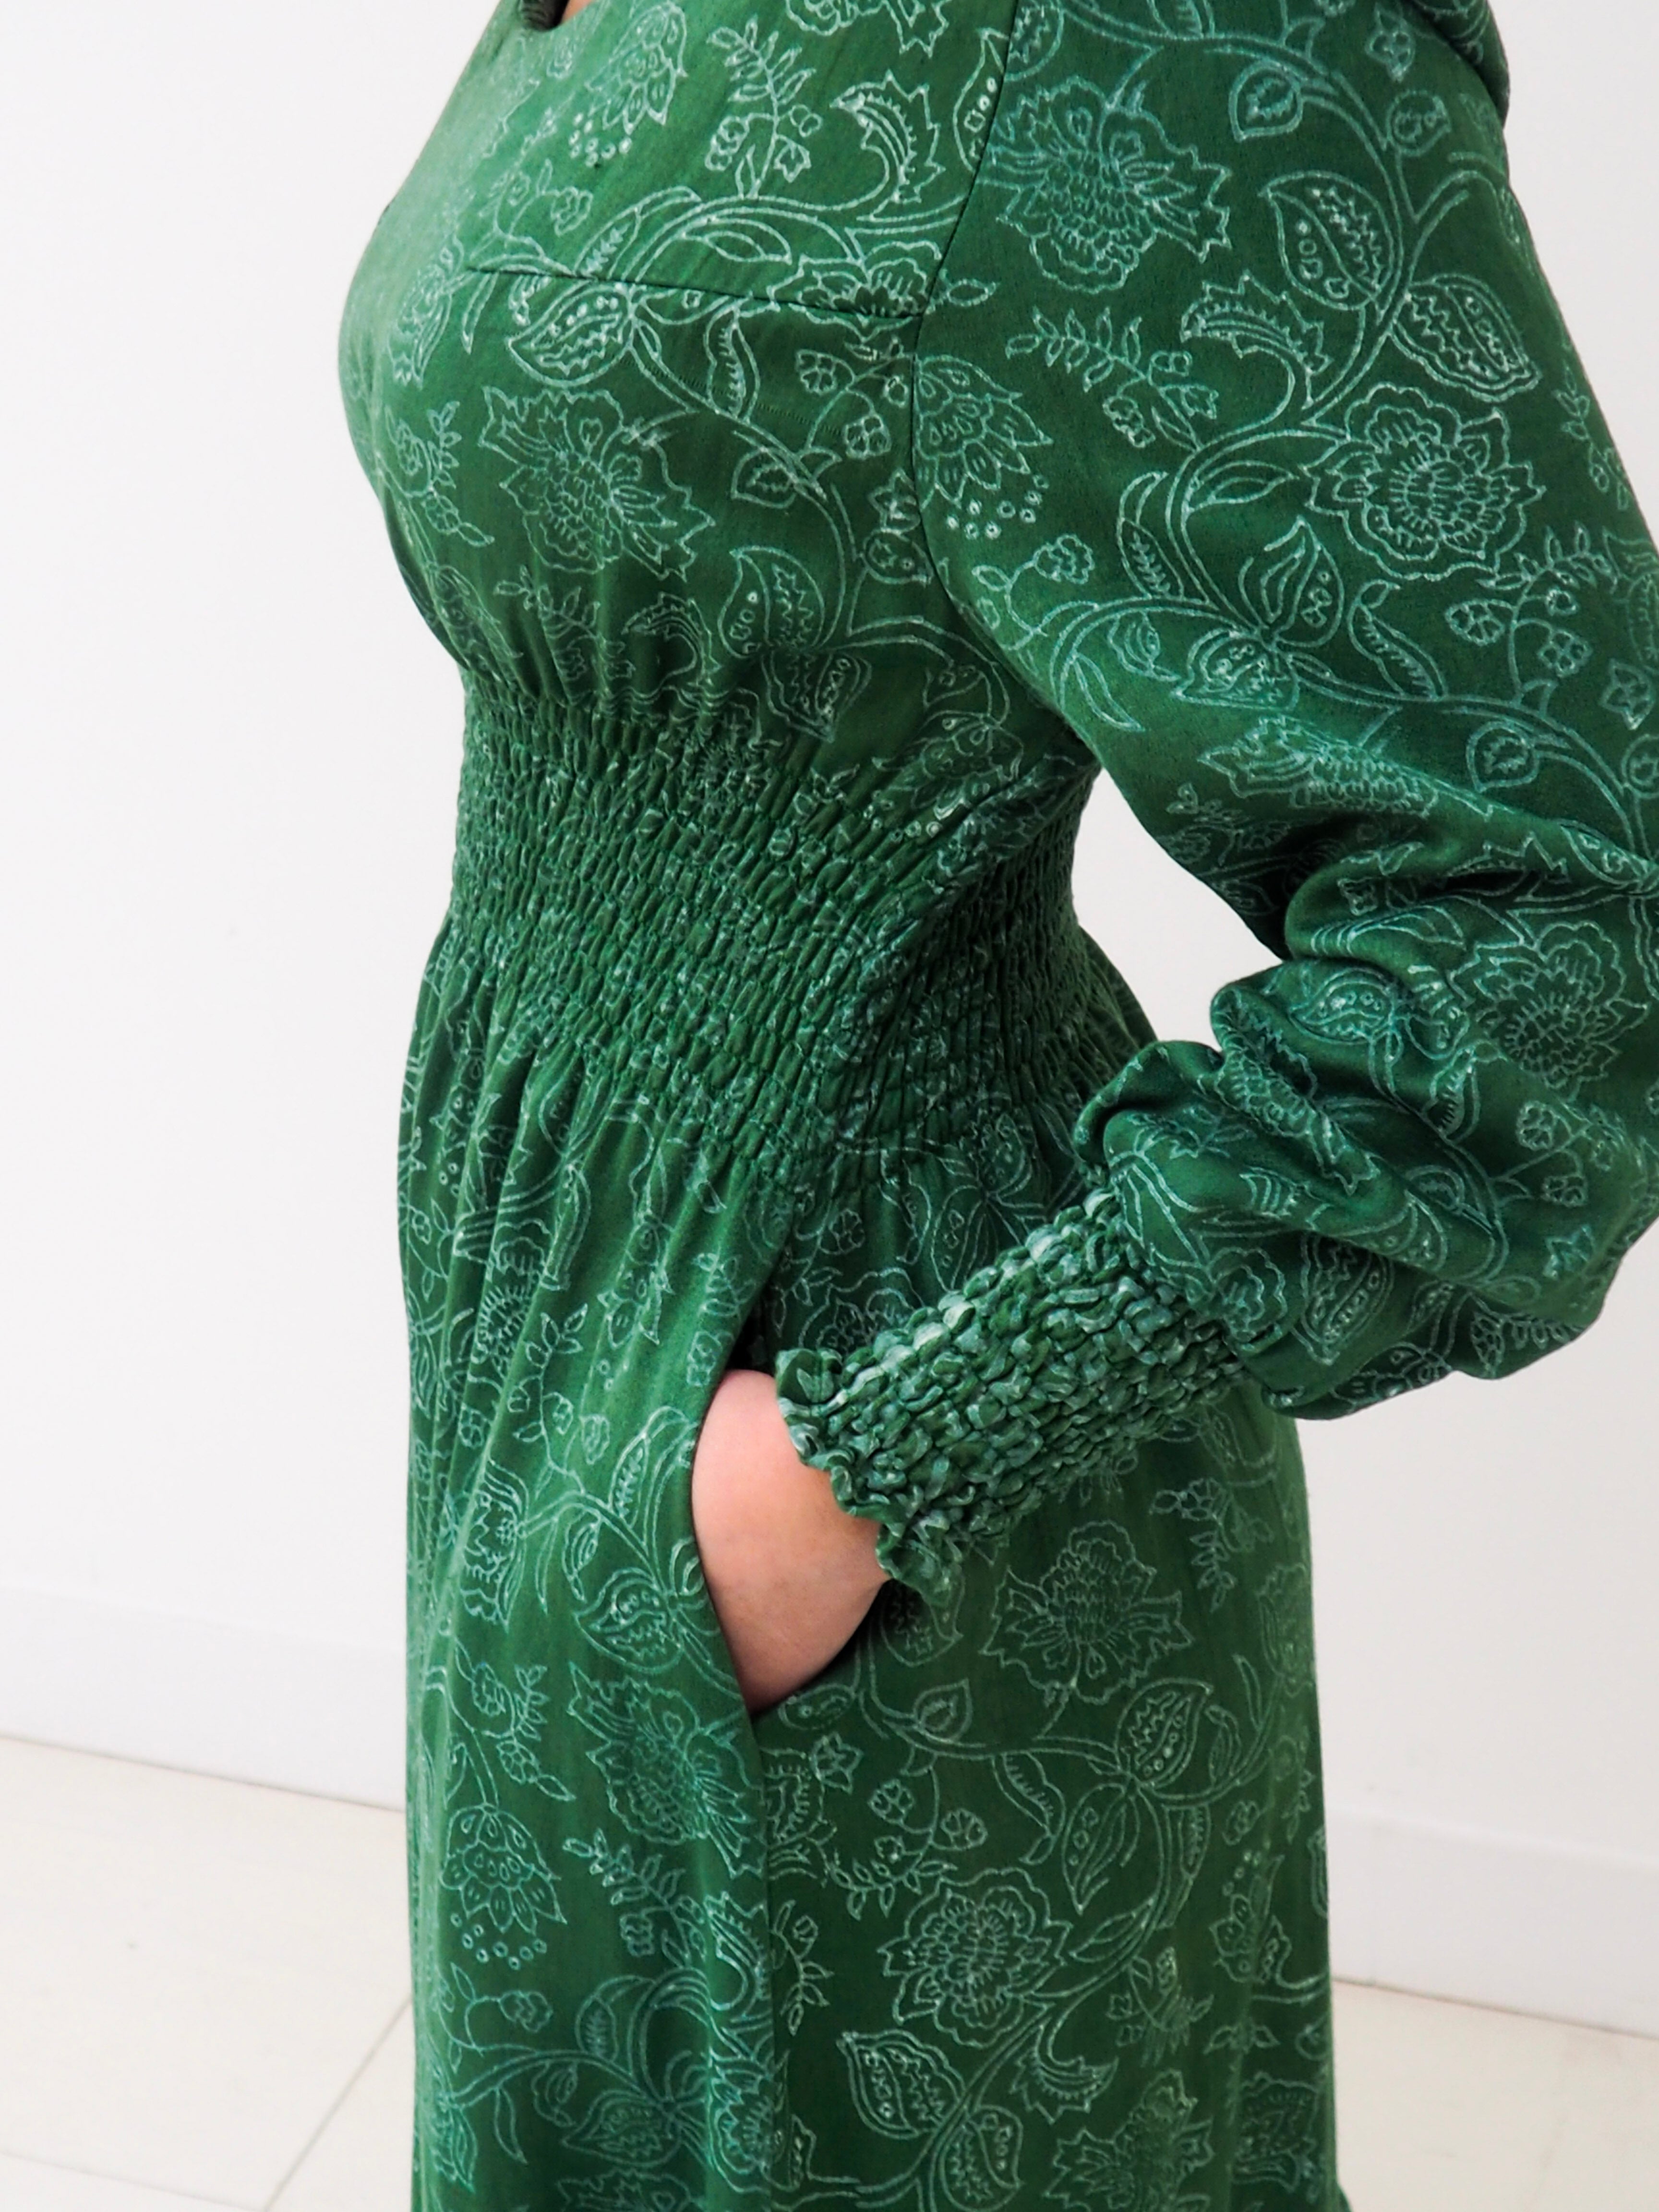 Robe Juliette longue verte